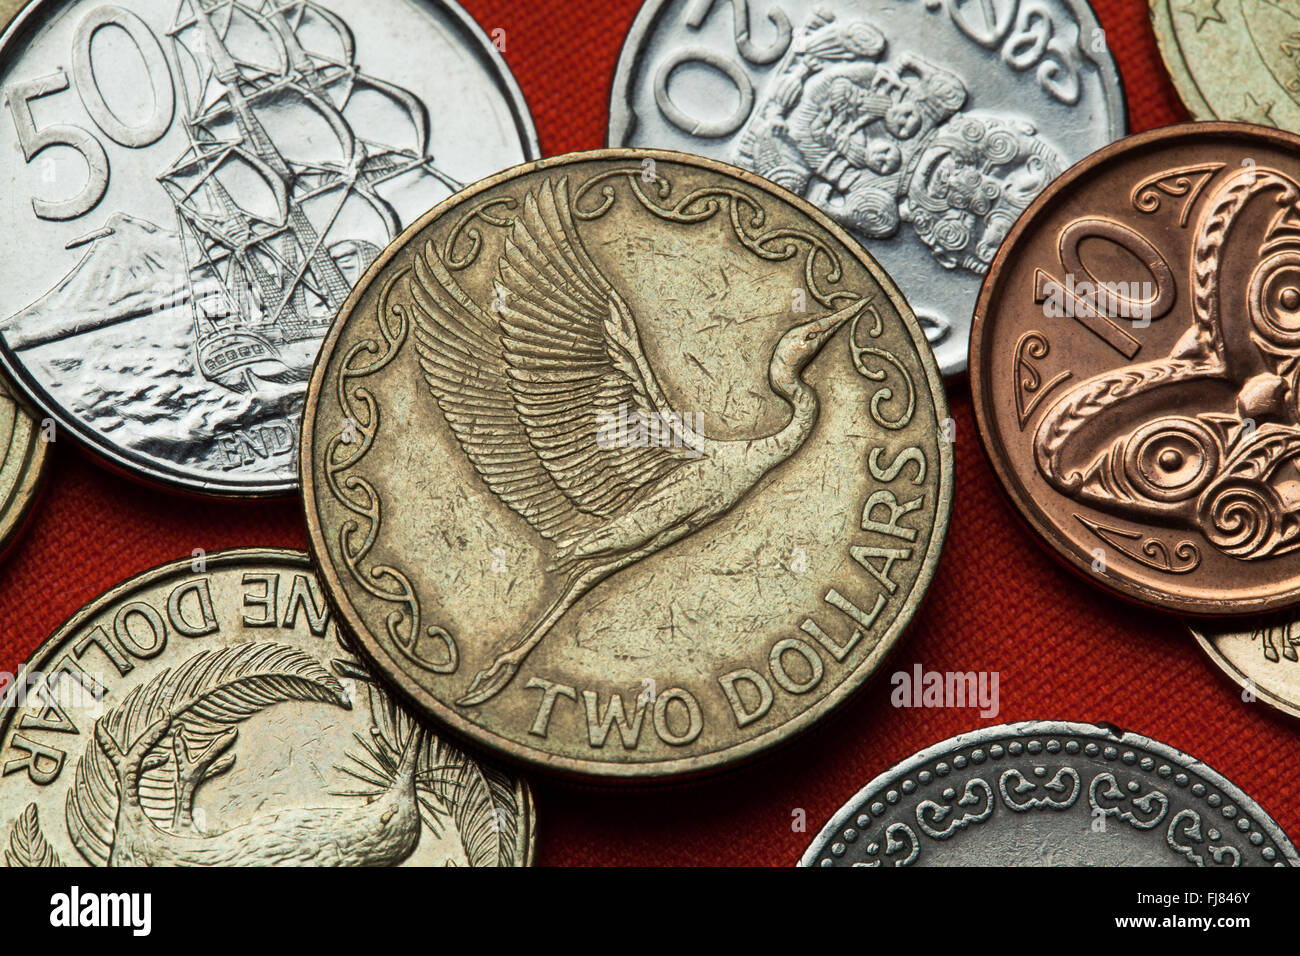 Monete della Nuova Zelanda. Grande orientale garzetta (Ardea alba modesta) rappresentata in Nuova Zelanda due dollari moneta. Foto Stock